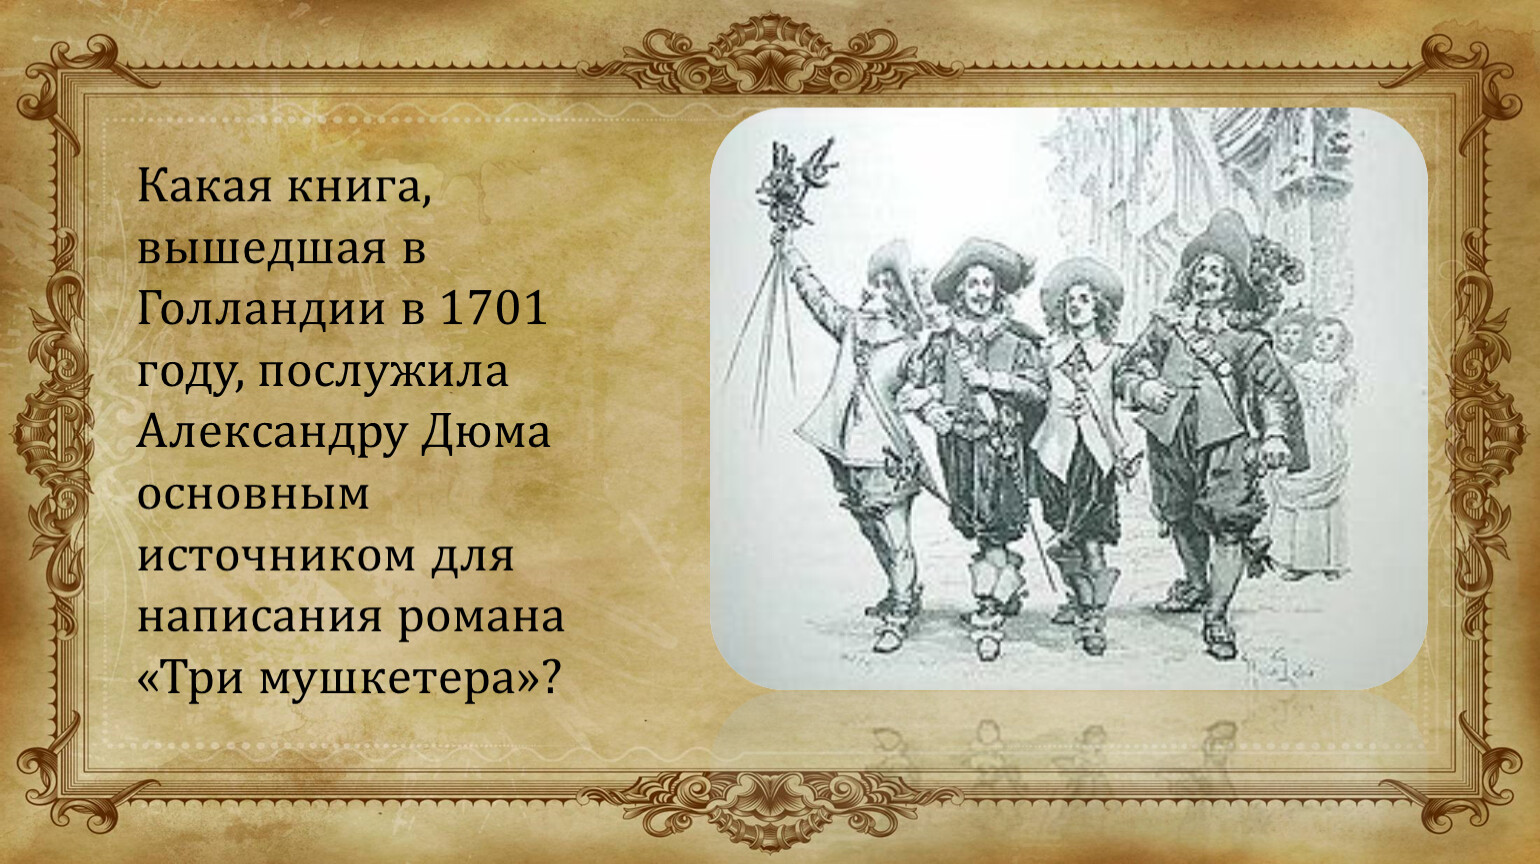 Александр Дюма + три мушкетера + картинки